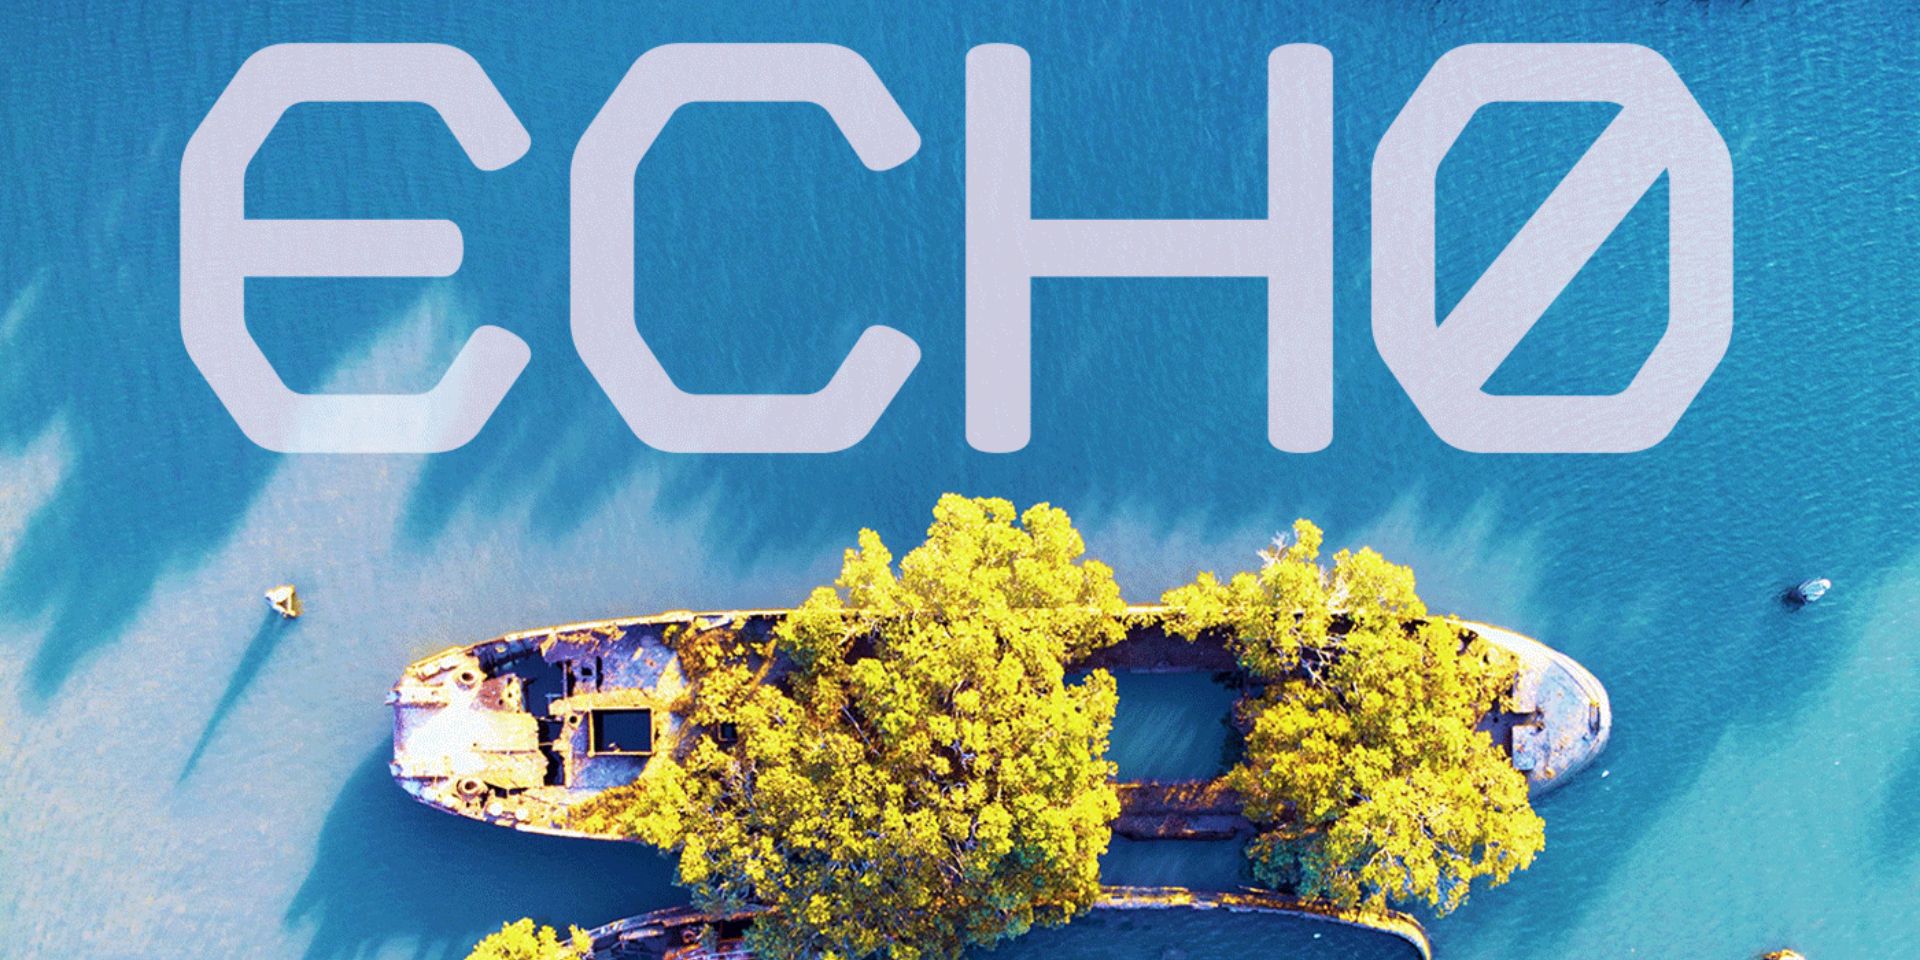 Imagem de título para ECH0, retratando um navio queimando de cima, coberto de árvores.